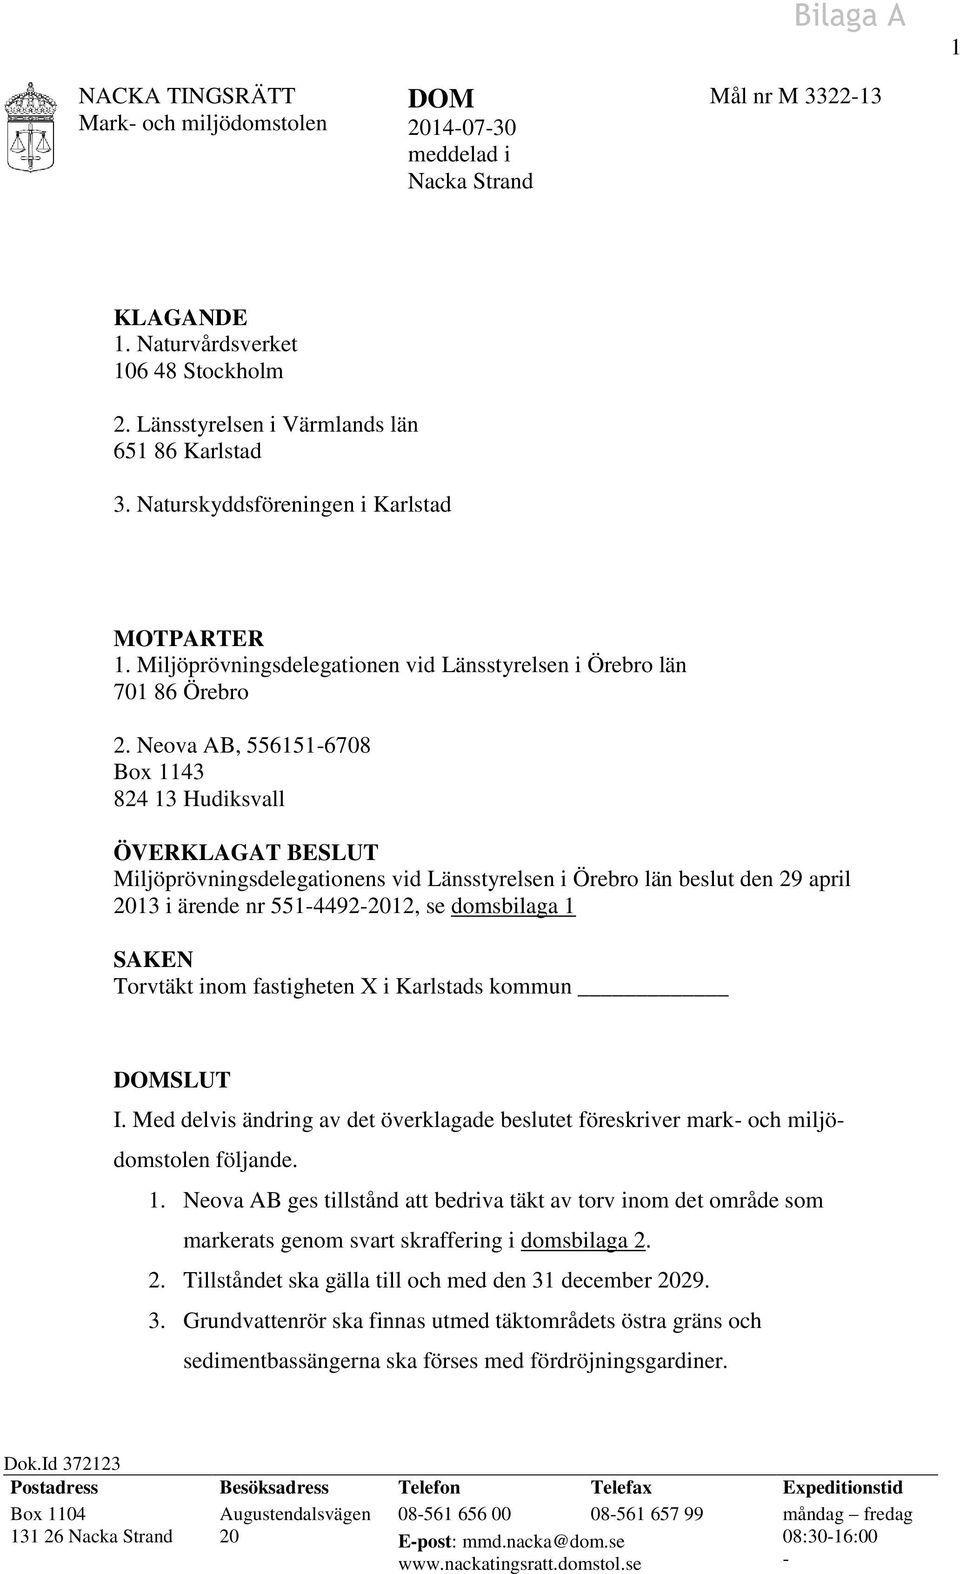 Neova AB, 556151-6708 Box 1143 824 13 Hudiksvall ÖVERKLAGAT BESLUT Miljöprövningsdelegationens vid Länsstyrelsen i Örebro län beslut den 29 april 2013 i ärende nr 551-4492-2012, se domsbilaga 1 SAKEN